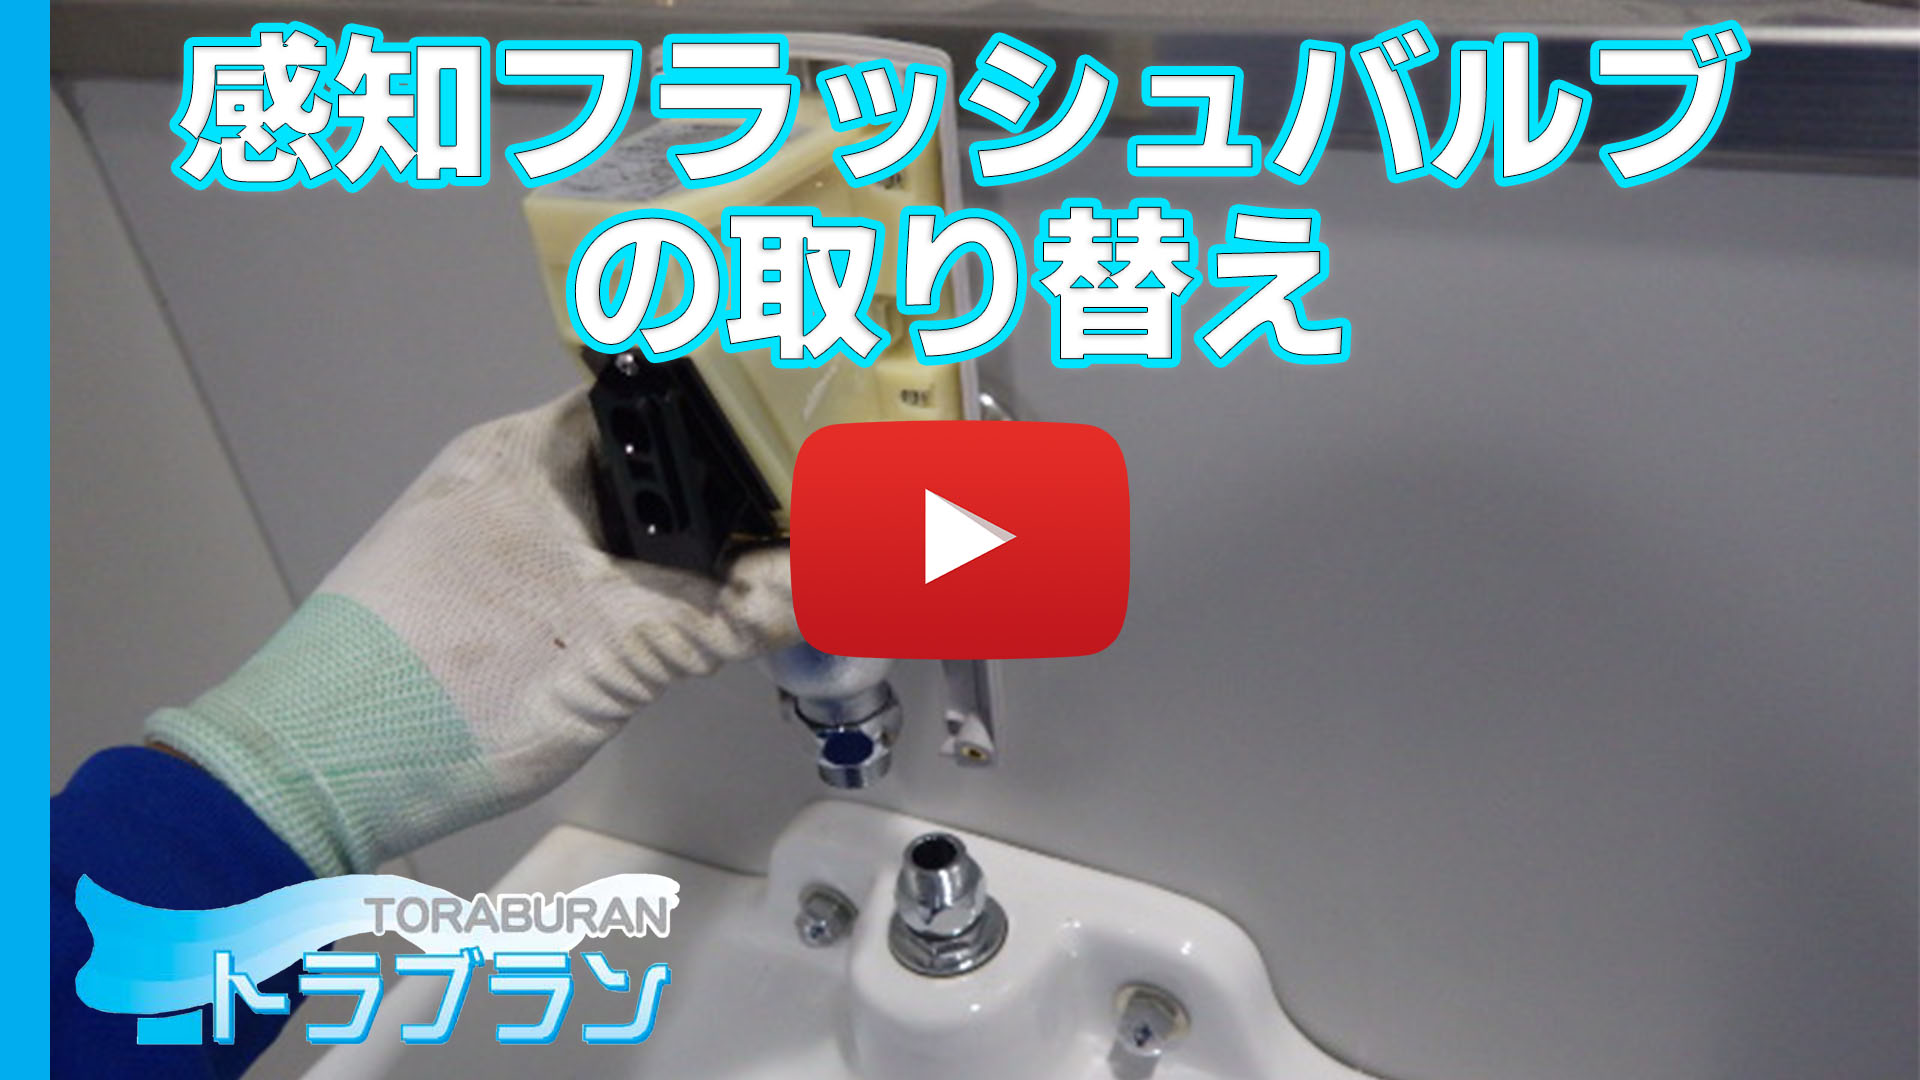 【トイレ 小便器修理】感知フラッシュバルブの取り替えのサムネイルb